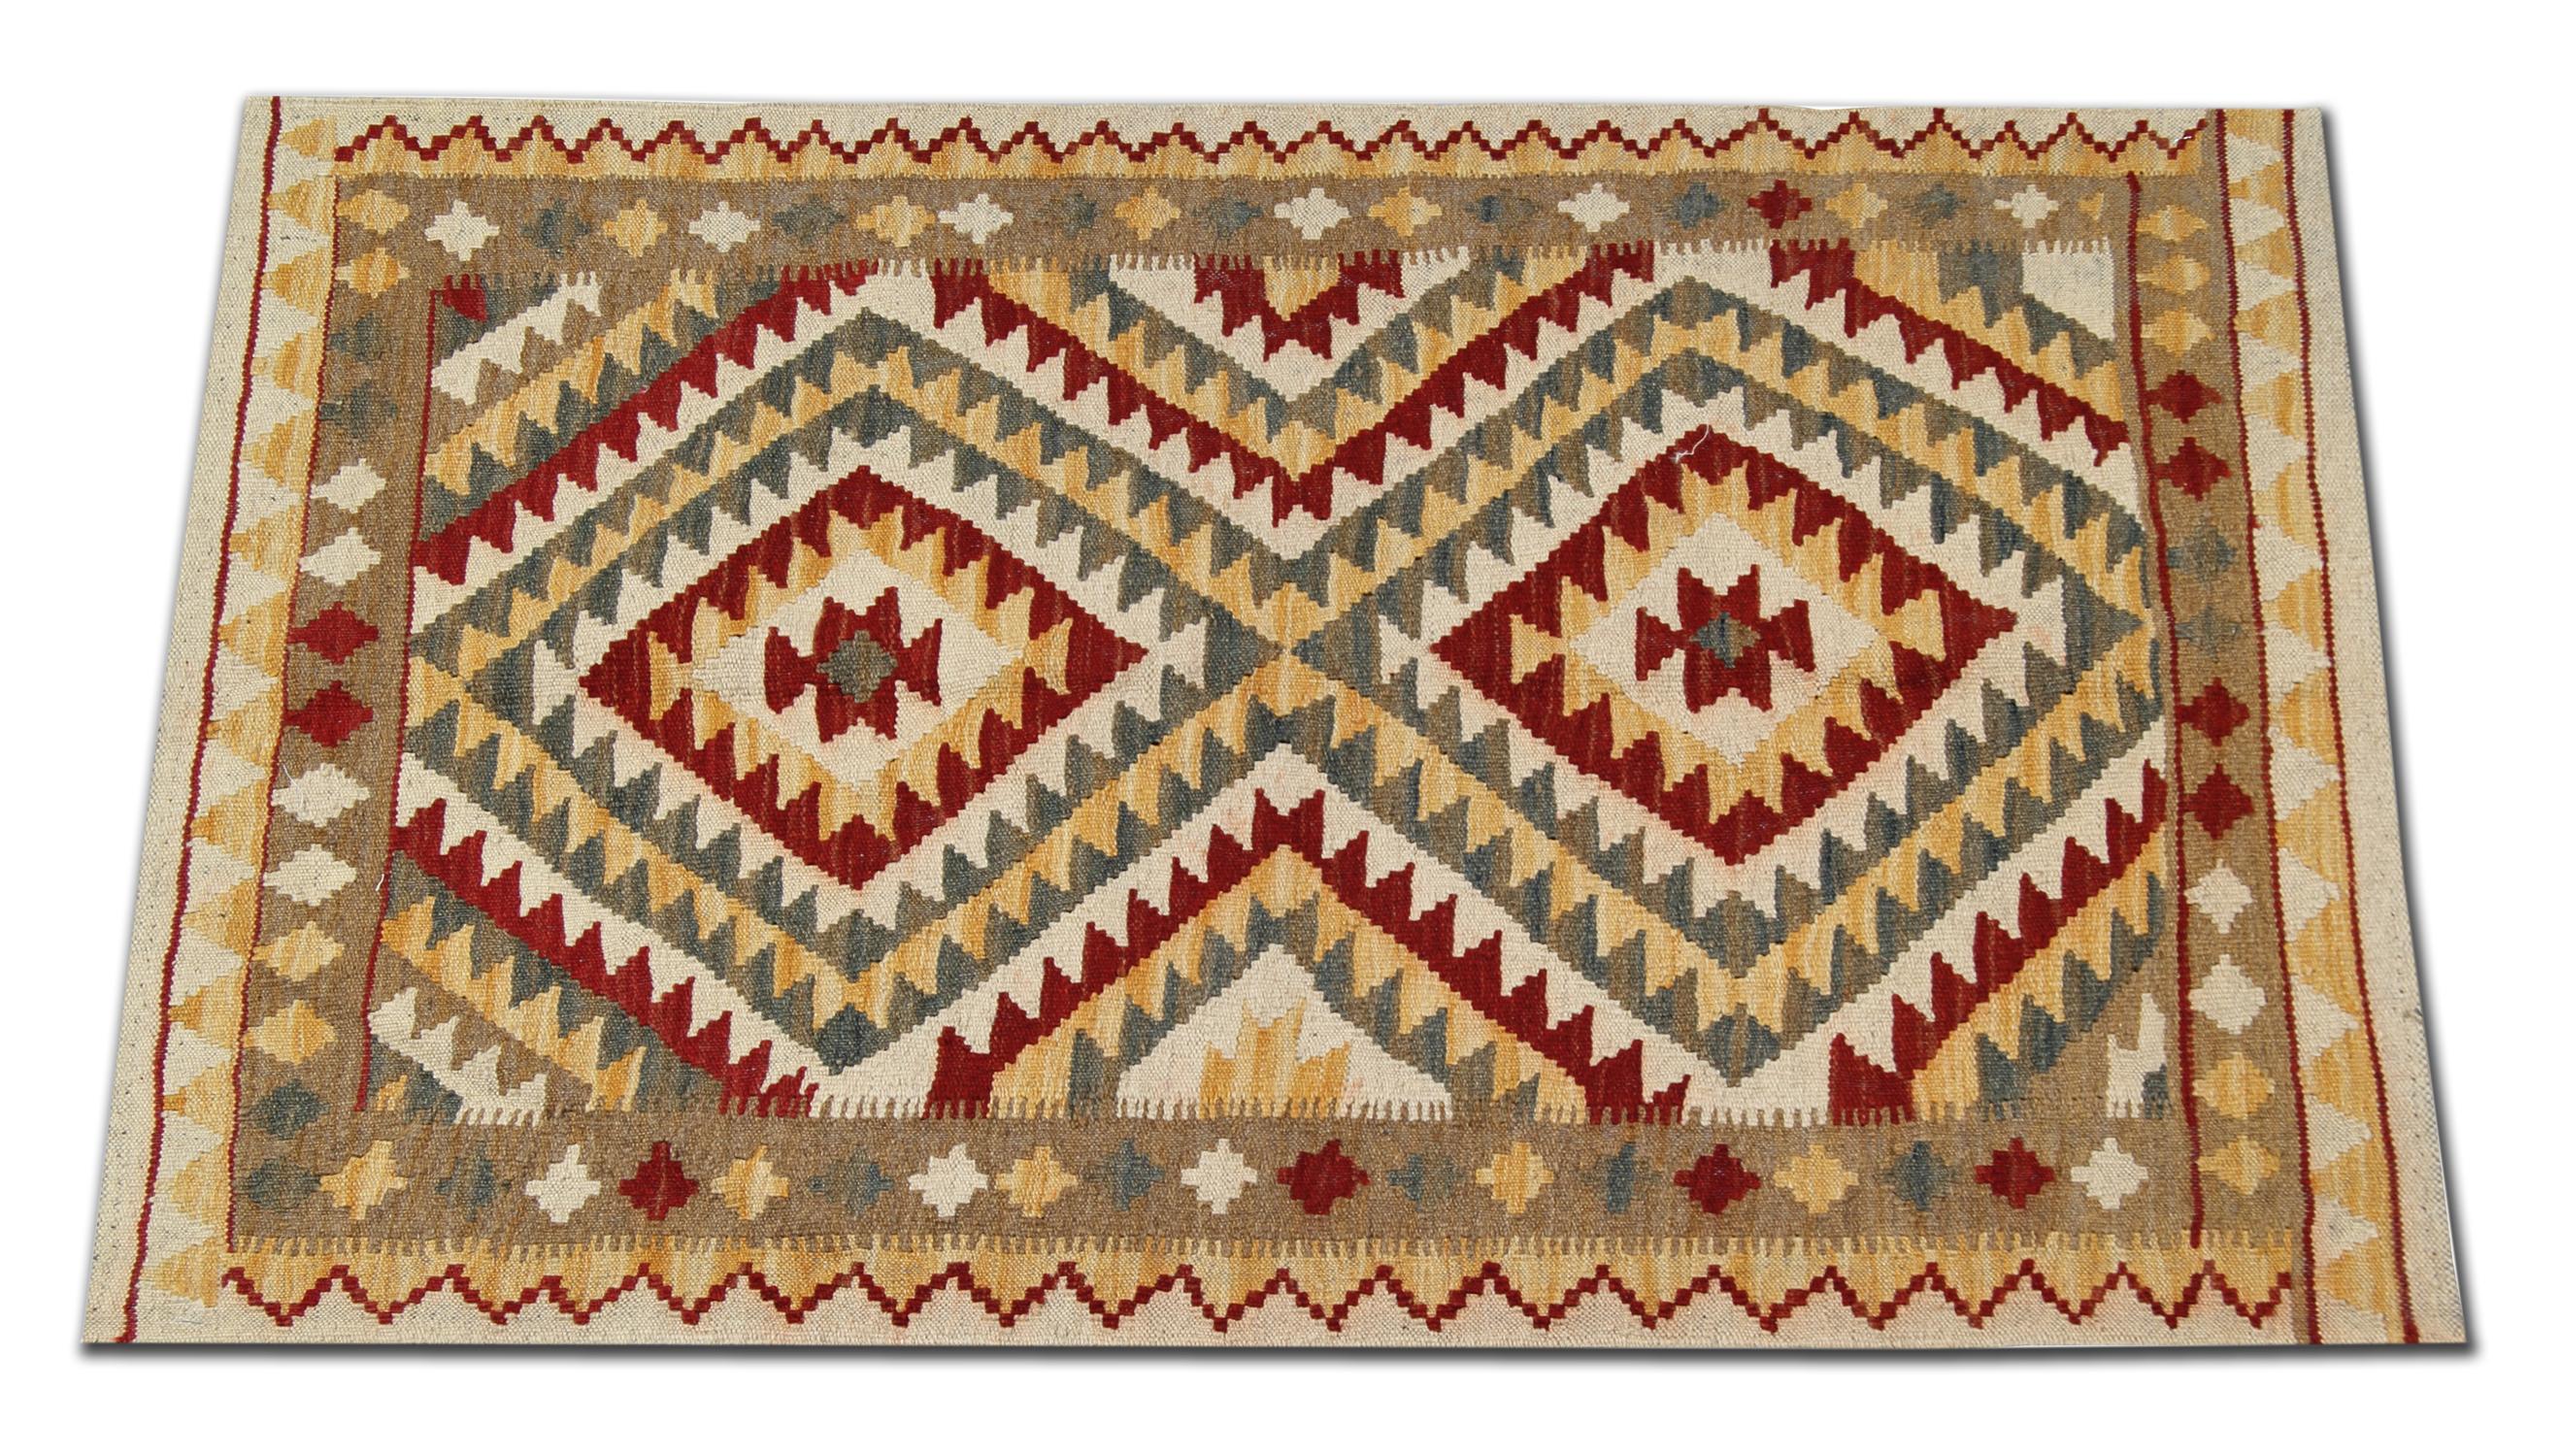 Dieser feine Wollteppich ist ein handgewebter Vintage-Kilim, der in den 1990er Jahren in Afghanistan gewebt wurde. Das zentrale Design besteht aus einem einfachen, rustikalen Streifenmuster, das mit gelben, roten, grünen und beigen Akzentfarben